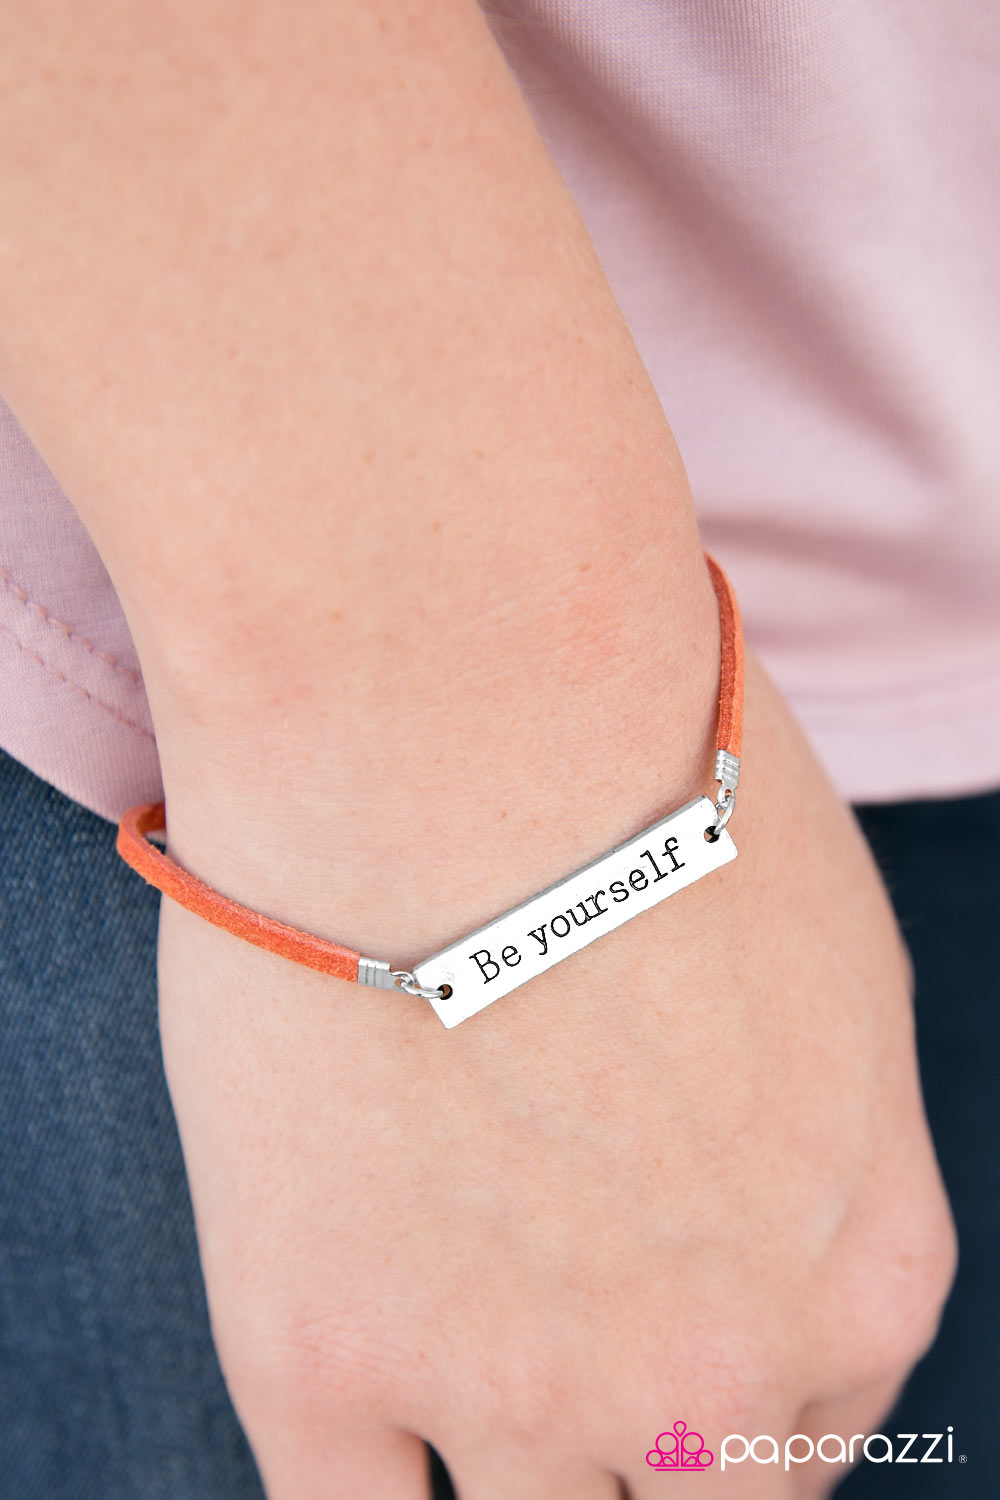 Be Yourself - Orange - Paparazzi bracelet